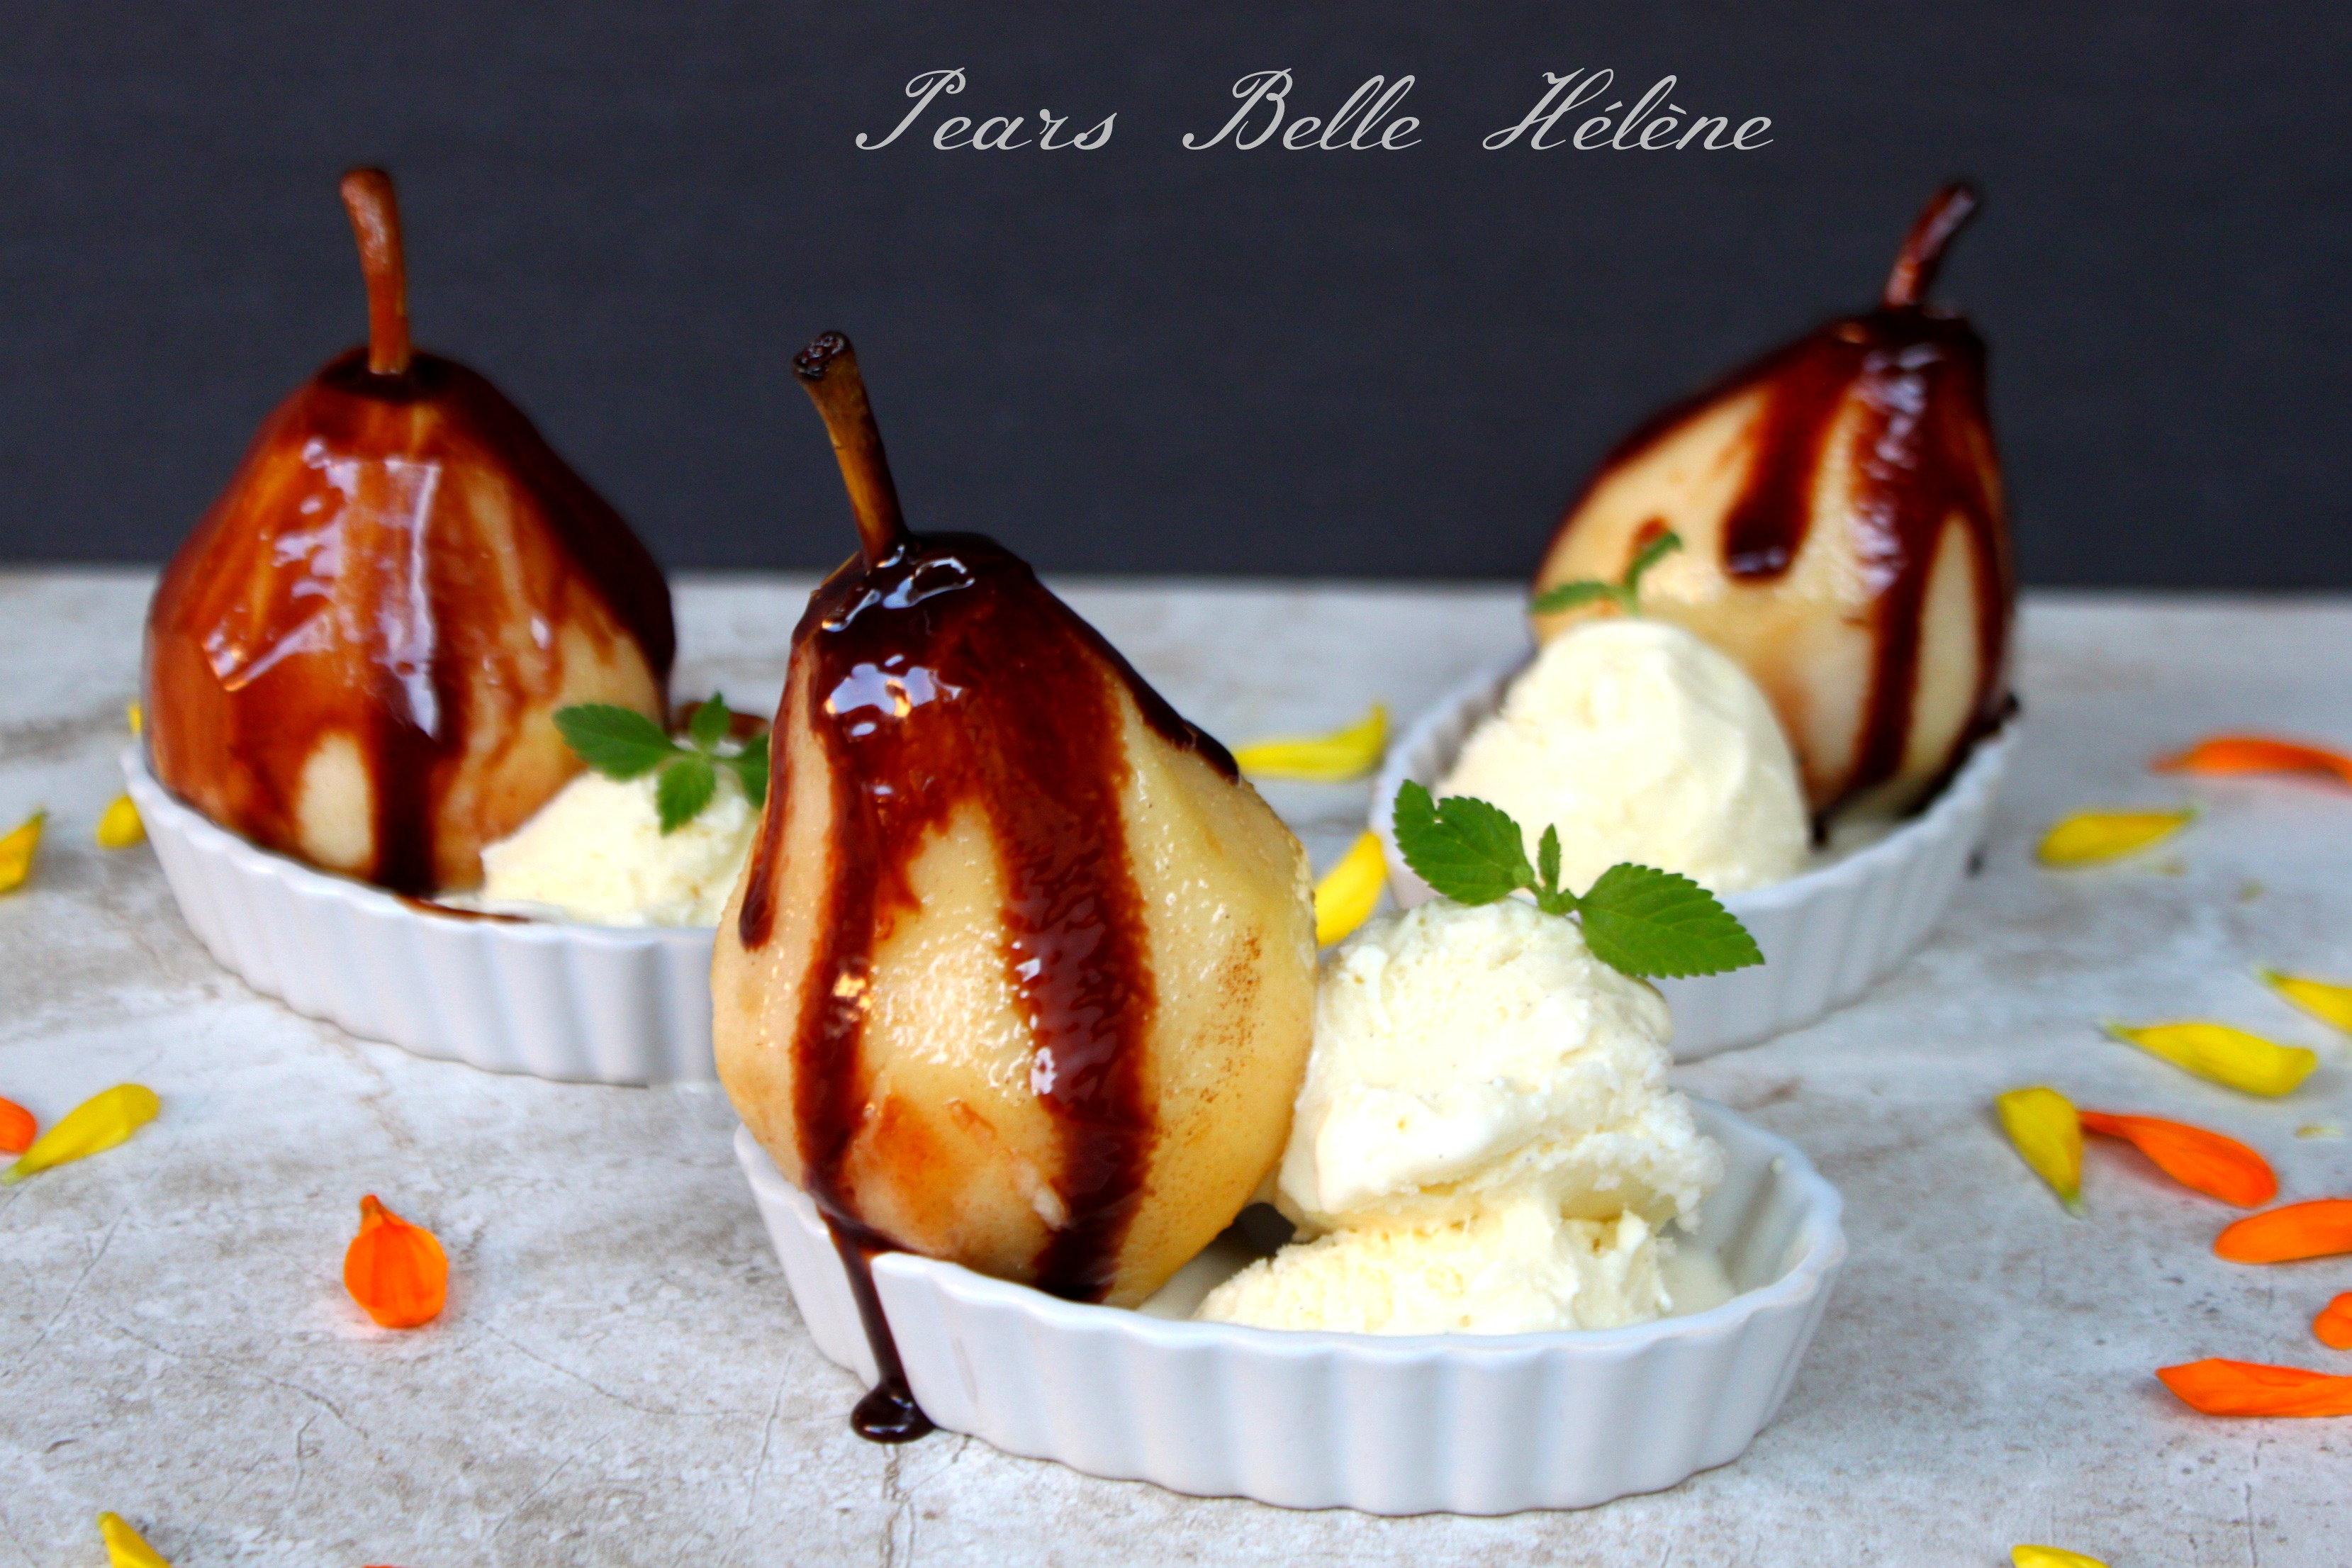 National Pears Hélène Day | Pears Belle Hélène – The Foodie Patootie